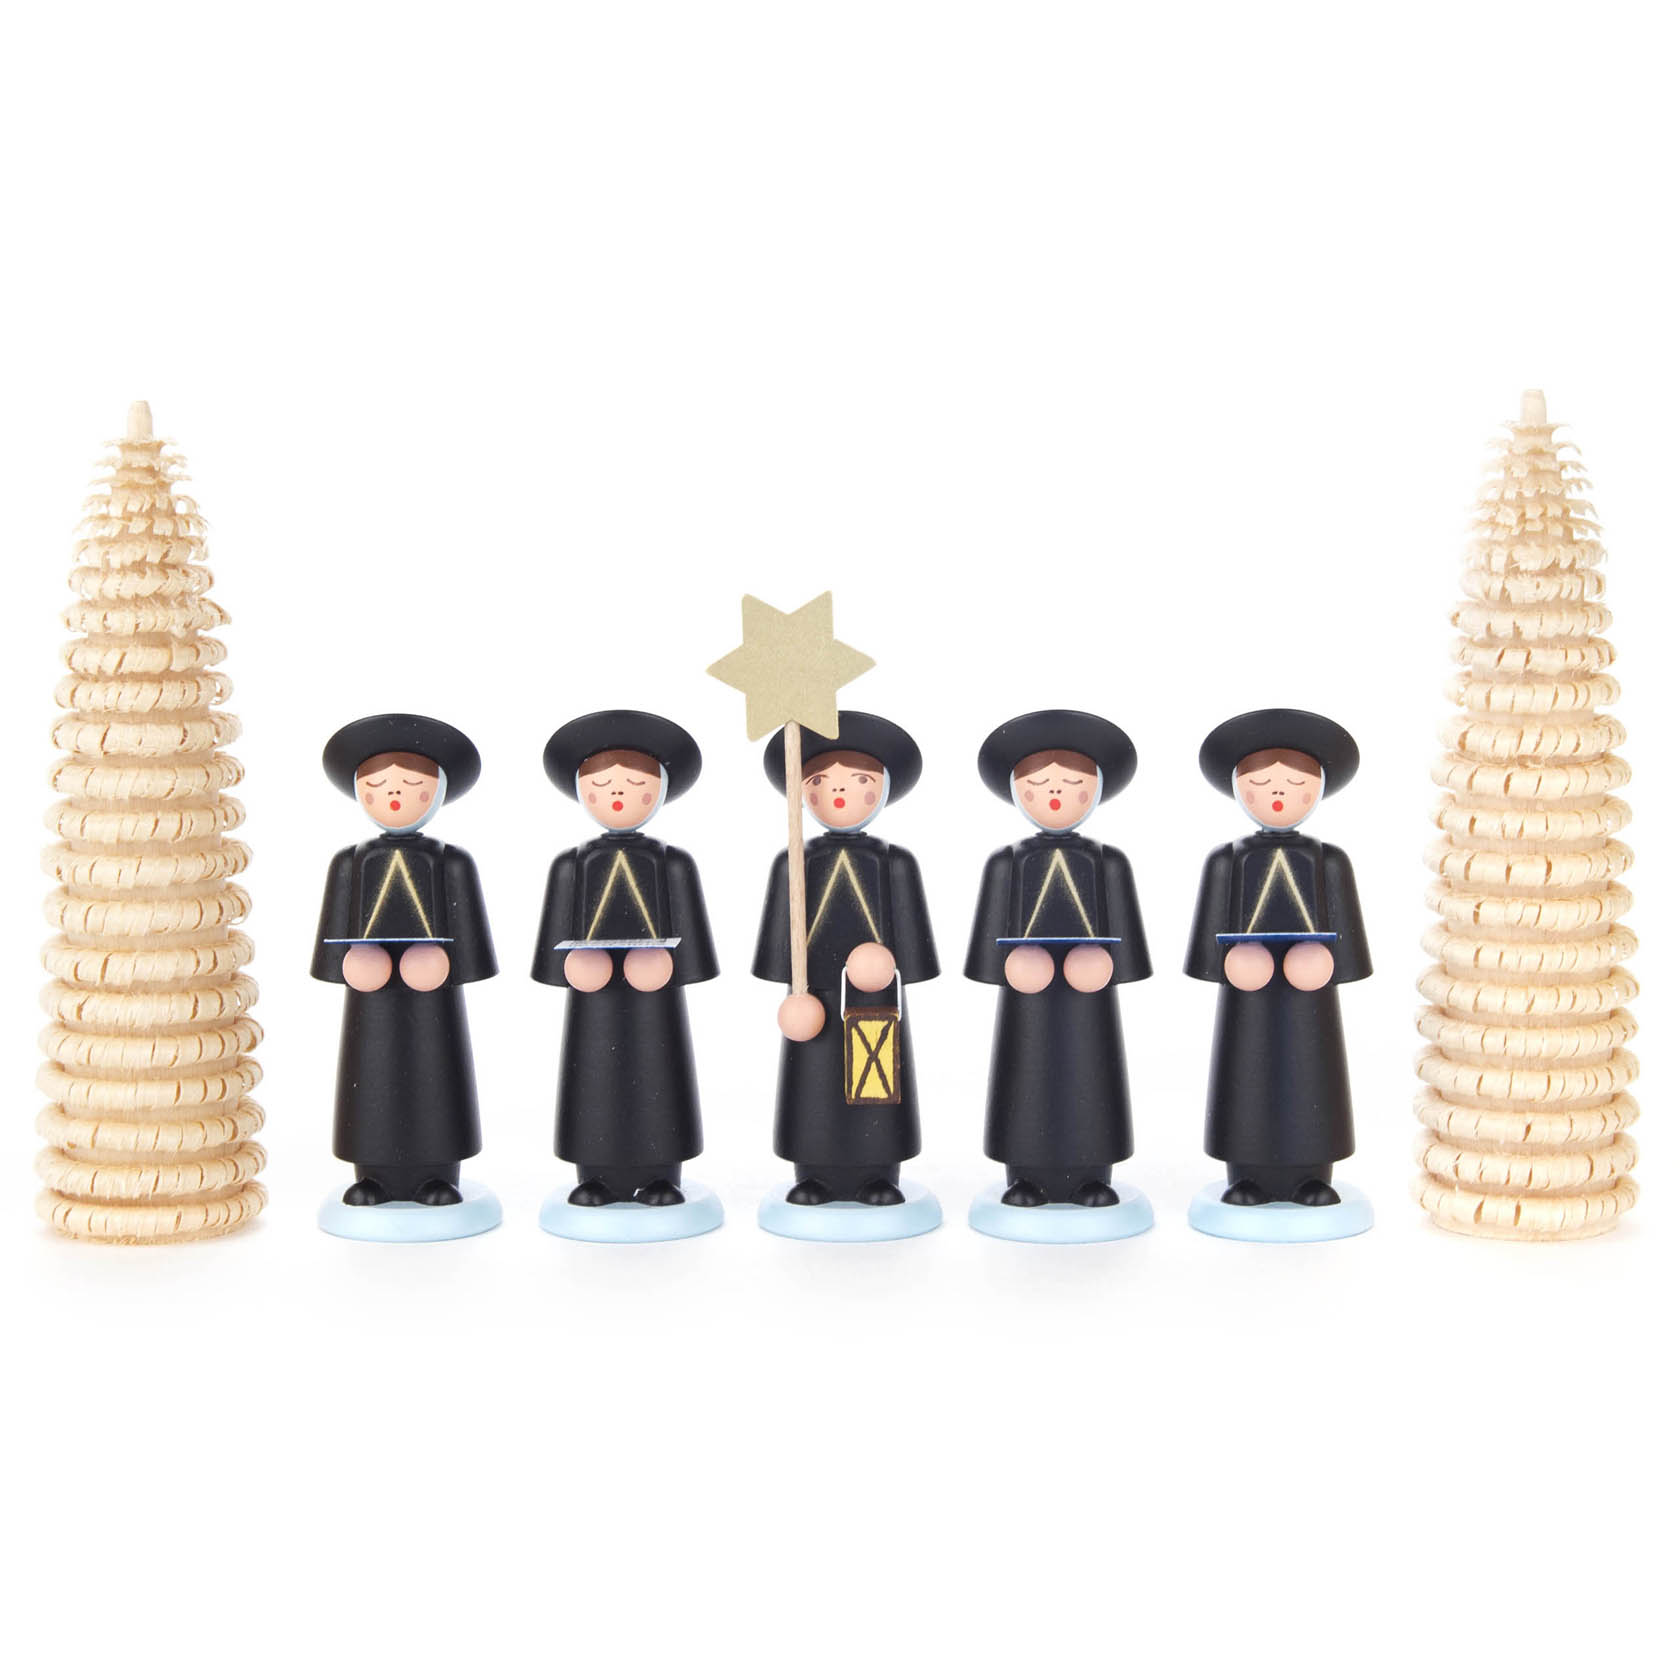 Kurrendefiguren schwarz mit Ringelbäumchen (7) im Dregeno Online Shop günstig kaufen